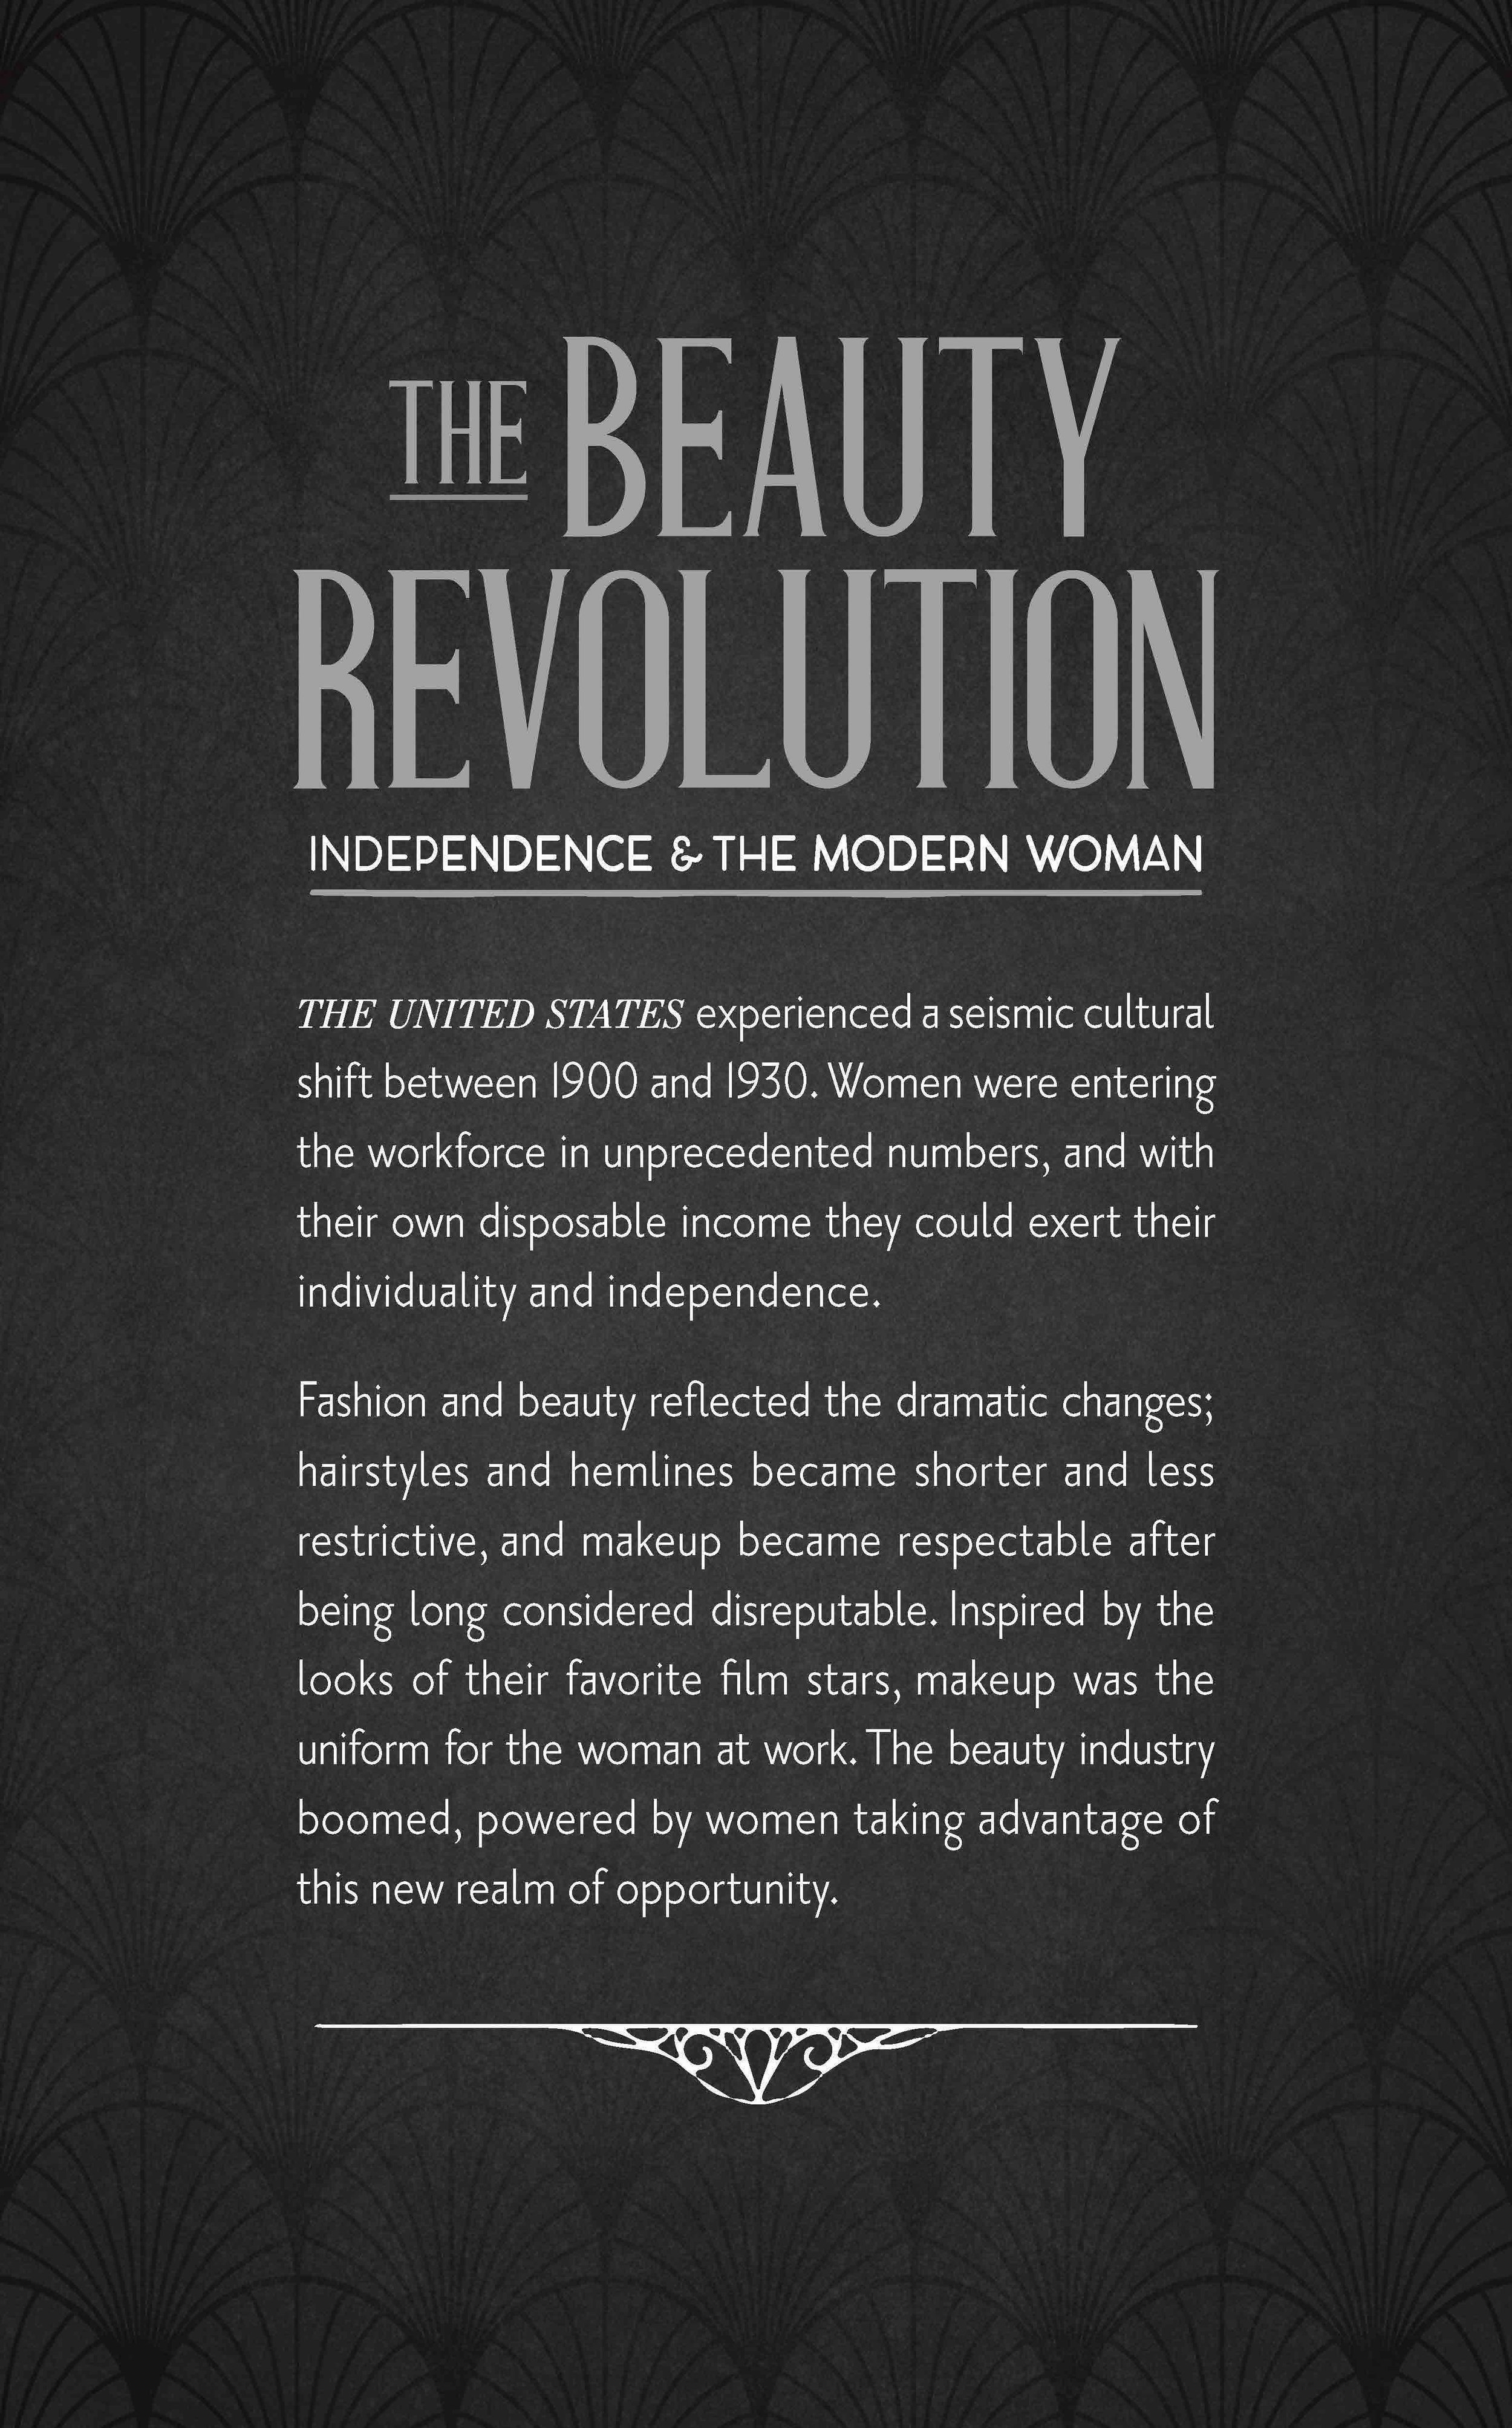 Morris_Perfume_Beauty Revolution.jpg